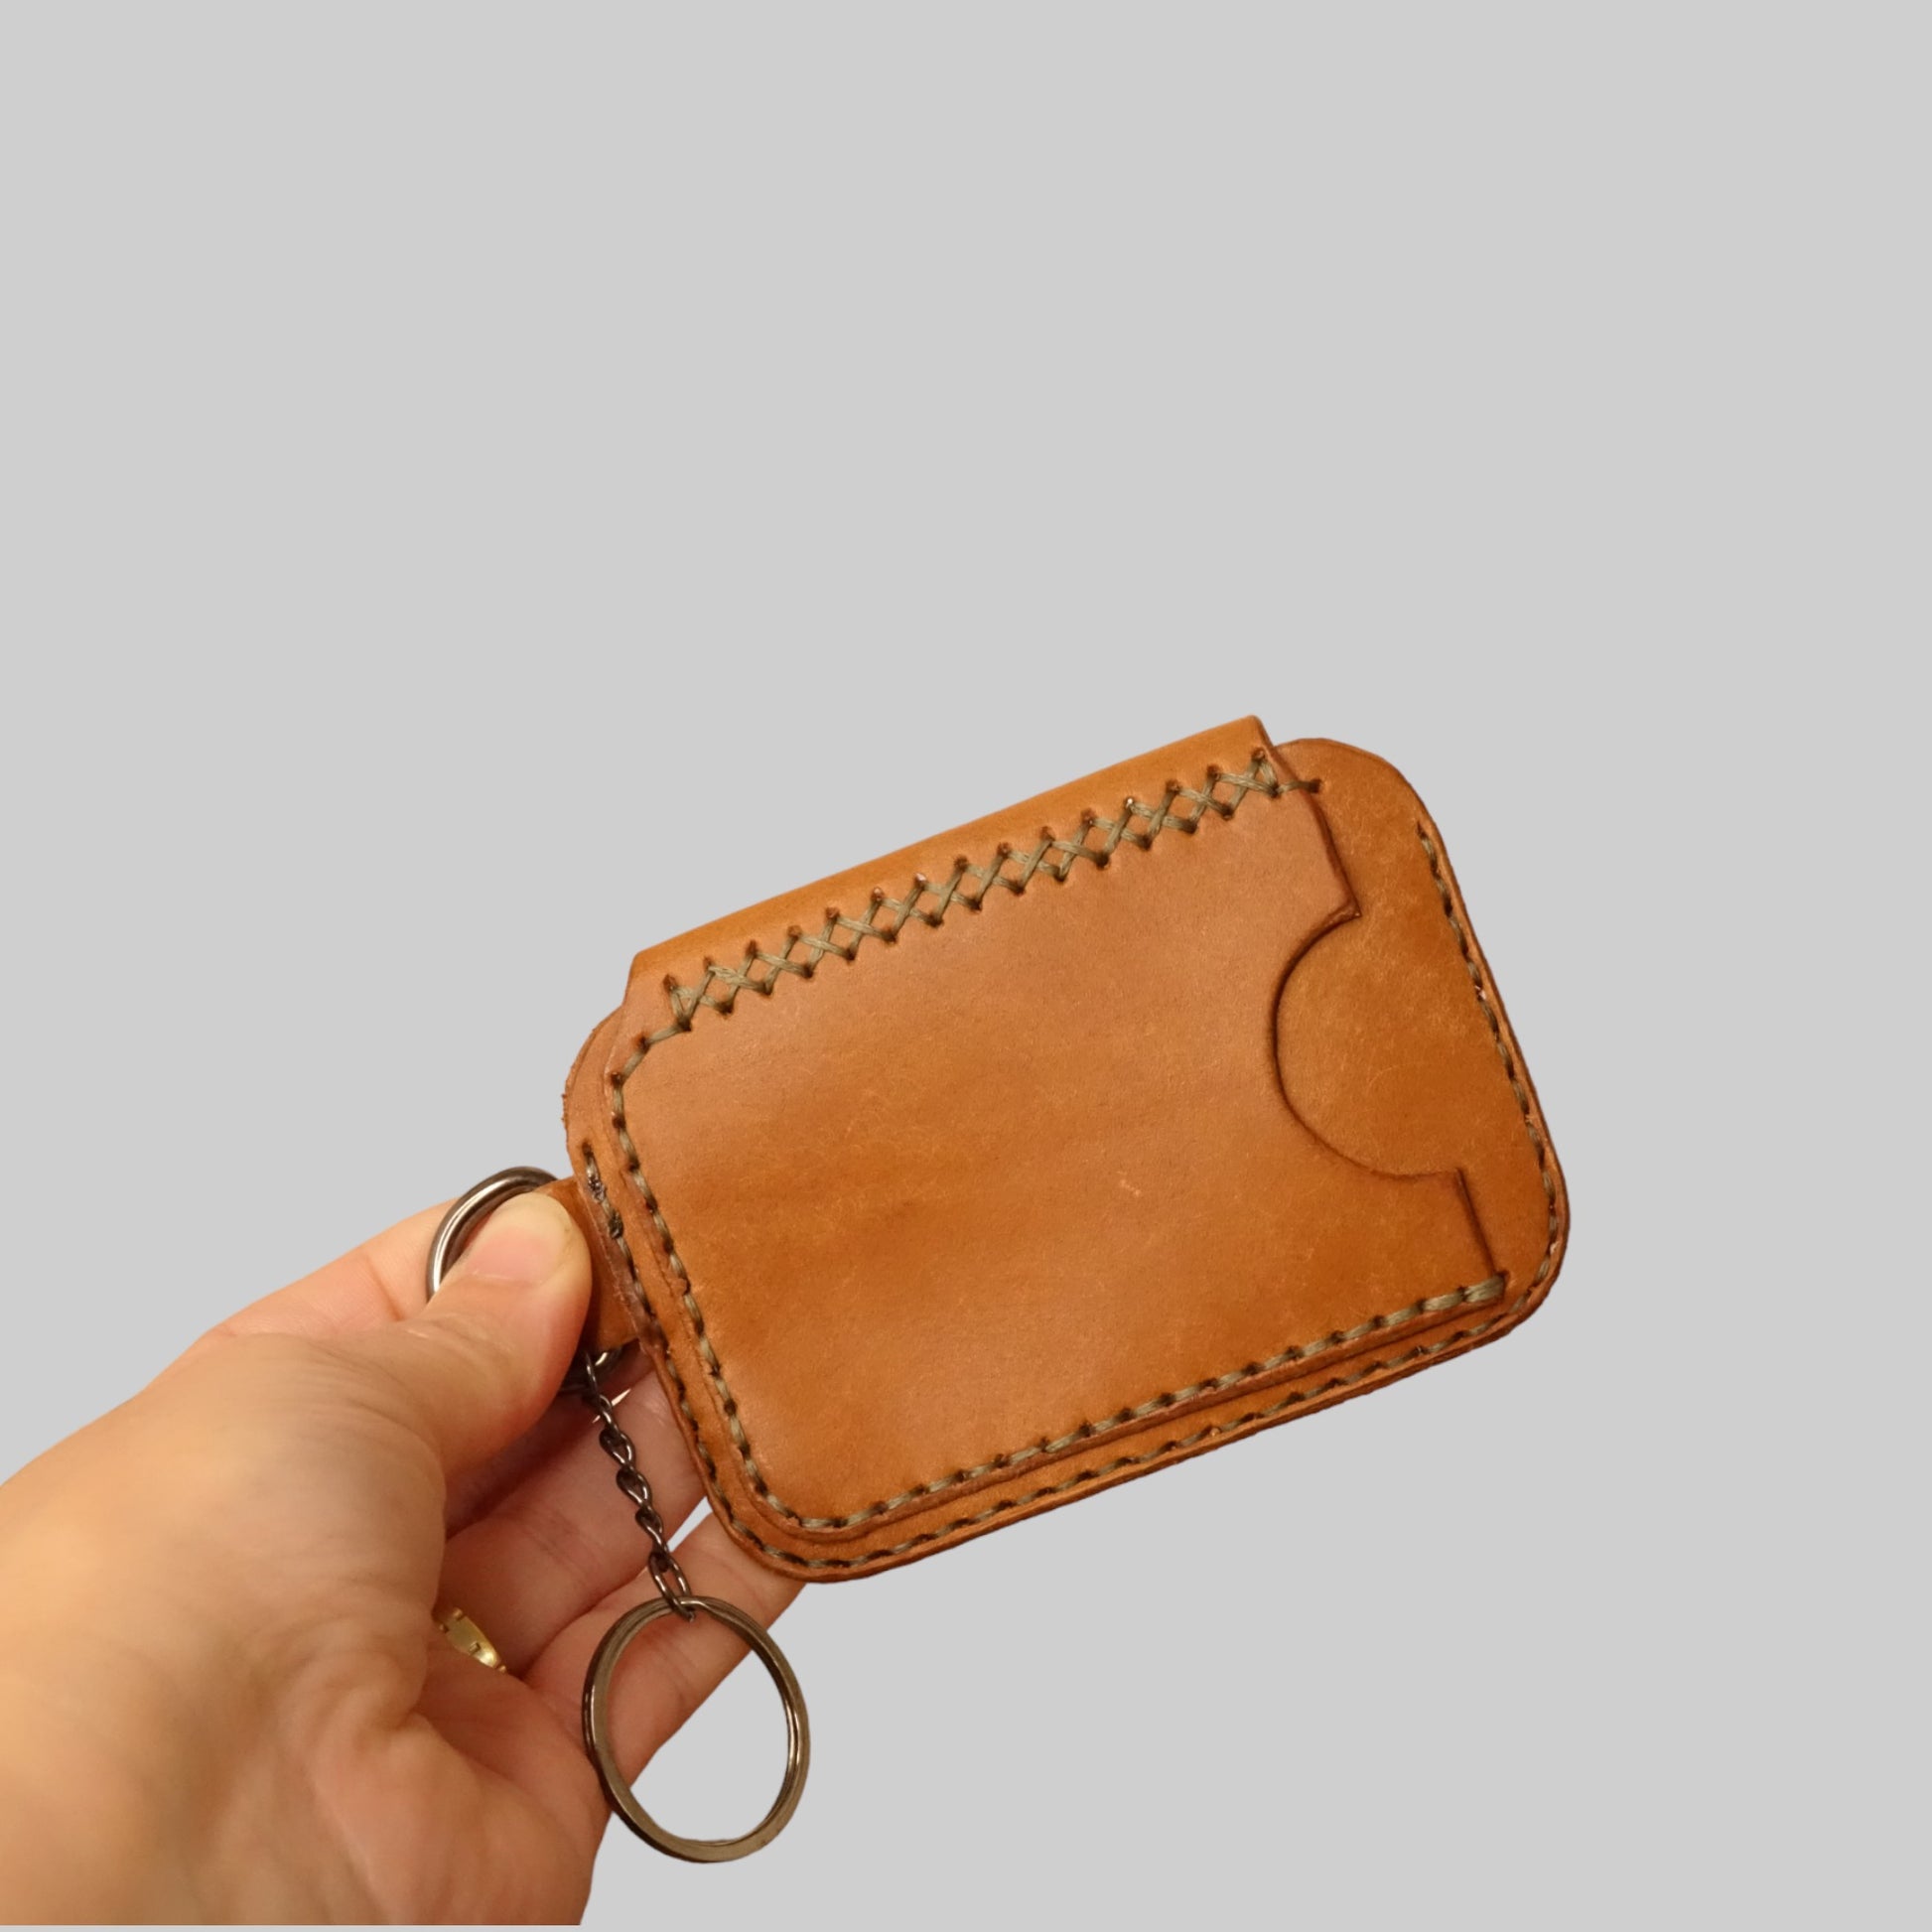 rgc handmade leather minimalist slim card holder wallet 11